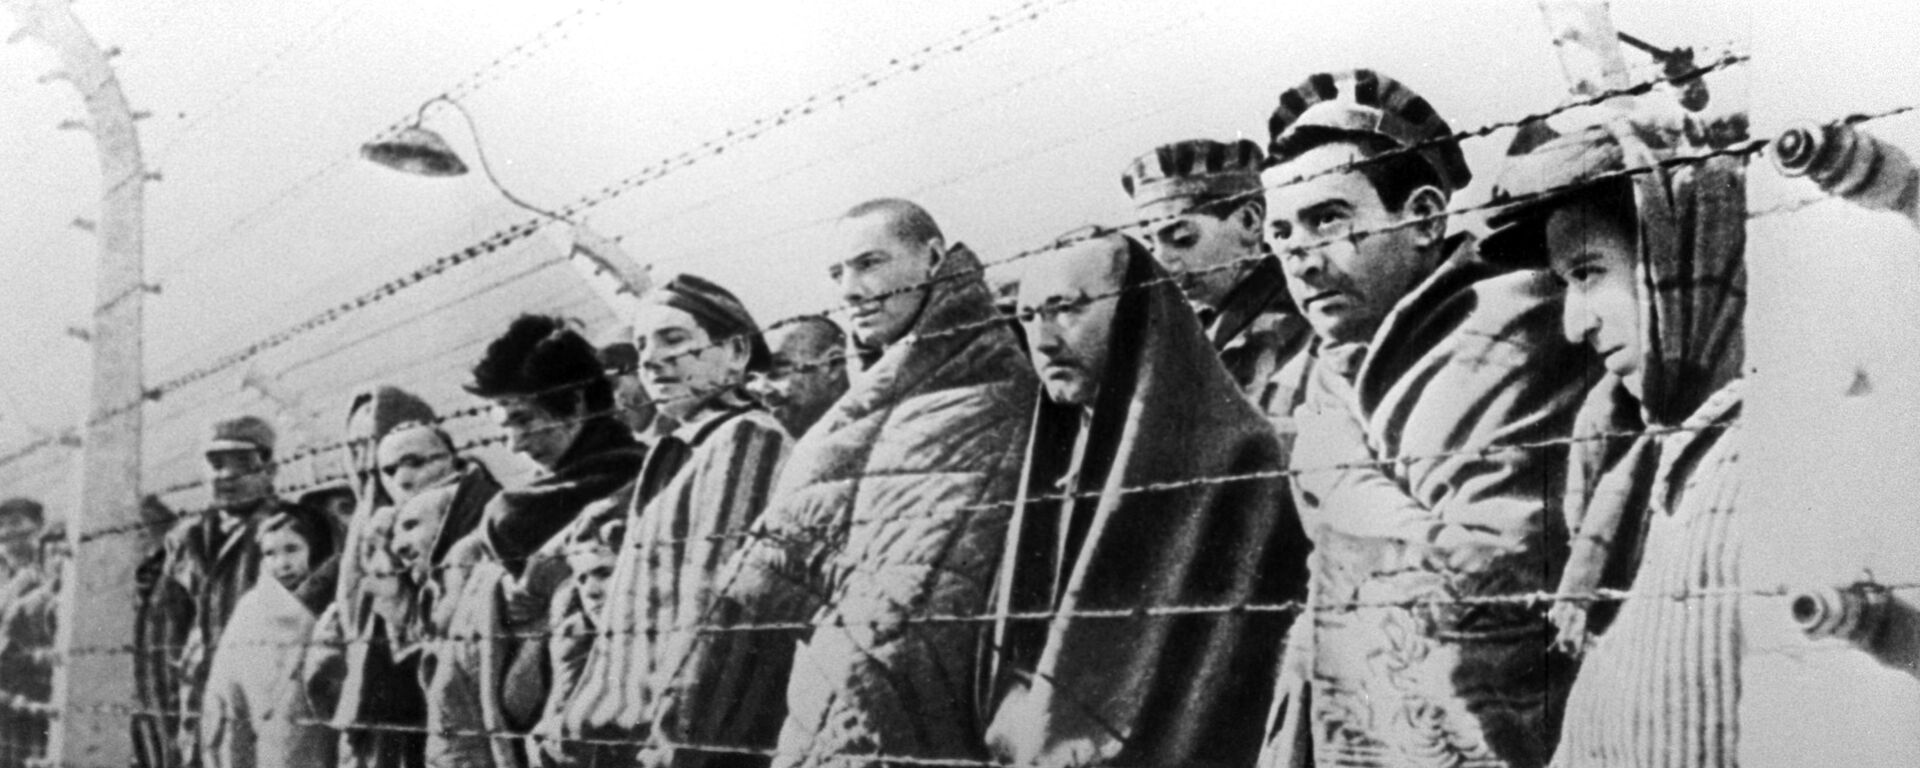 Узники концентрационного лагеря Освенцим, освобожденные войсками Красной армии в январе 1945 года - Sputnik Ўзбекистон, 1920, 25.01.2020